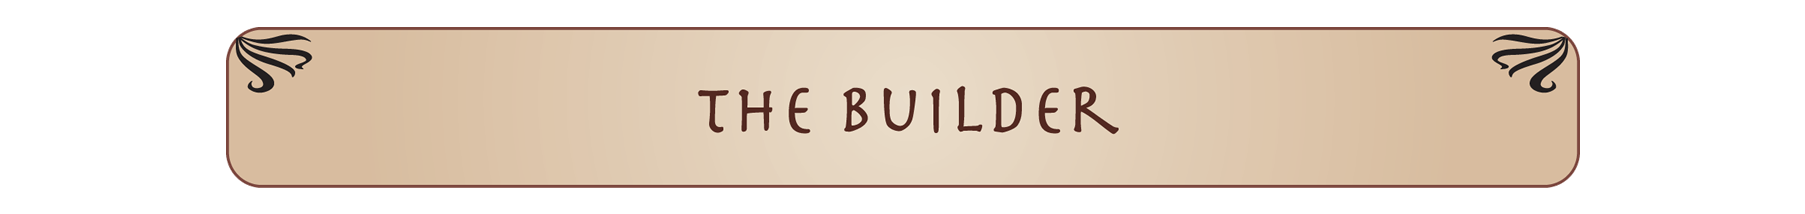 builder-1a